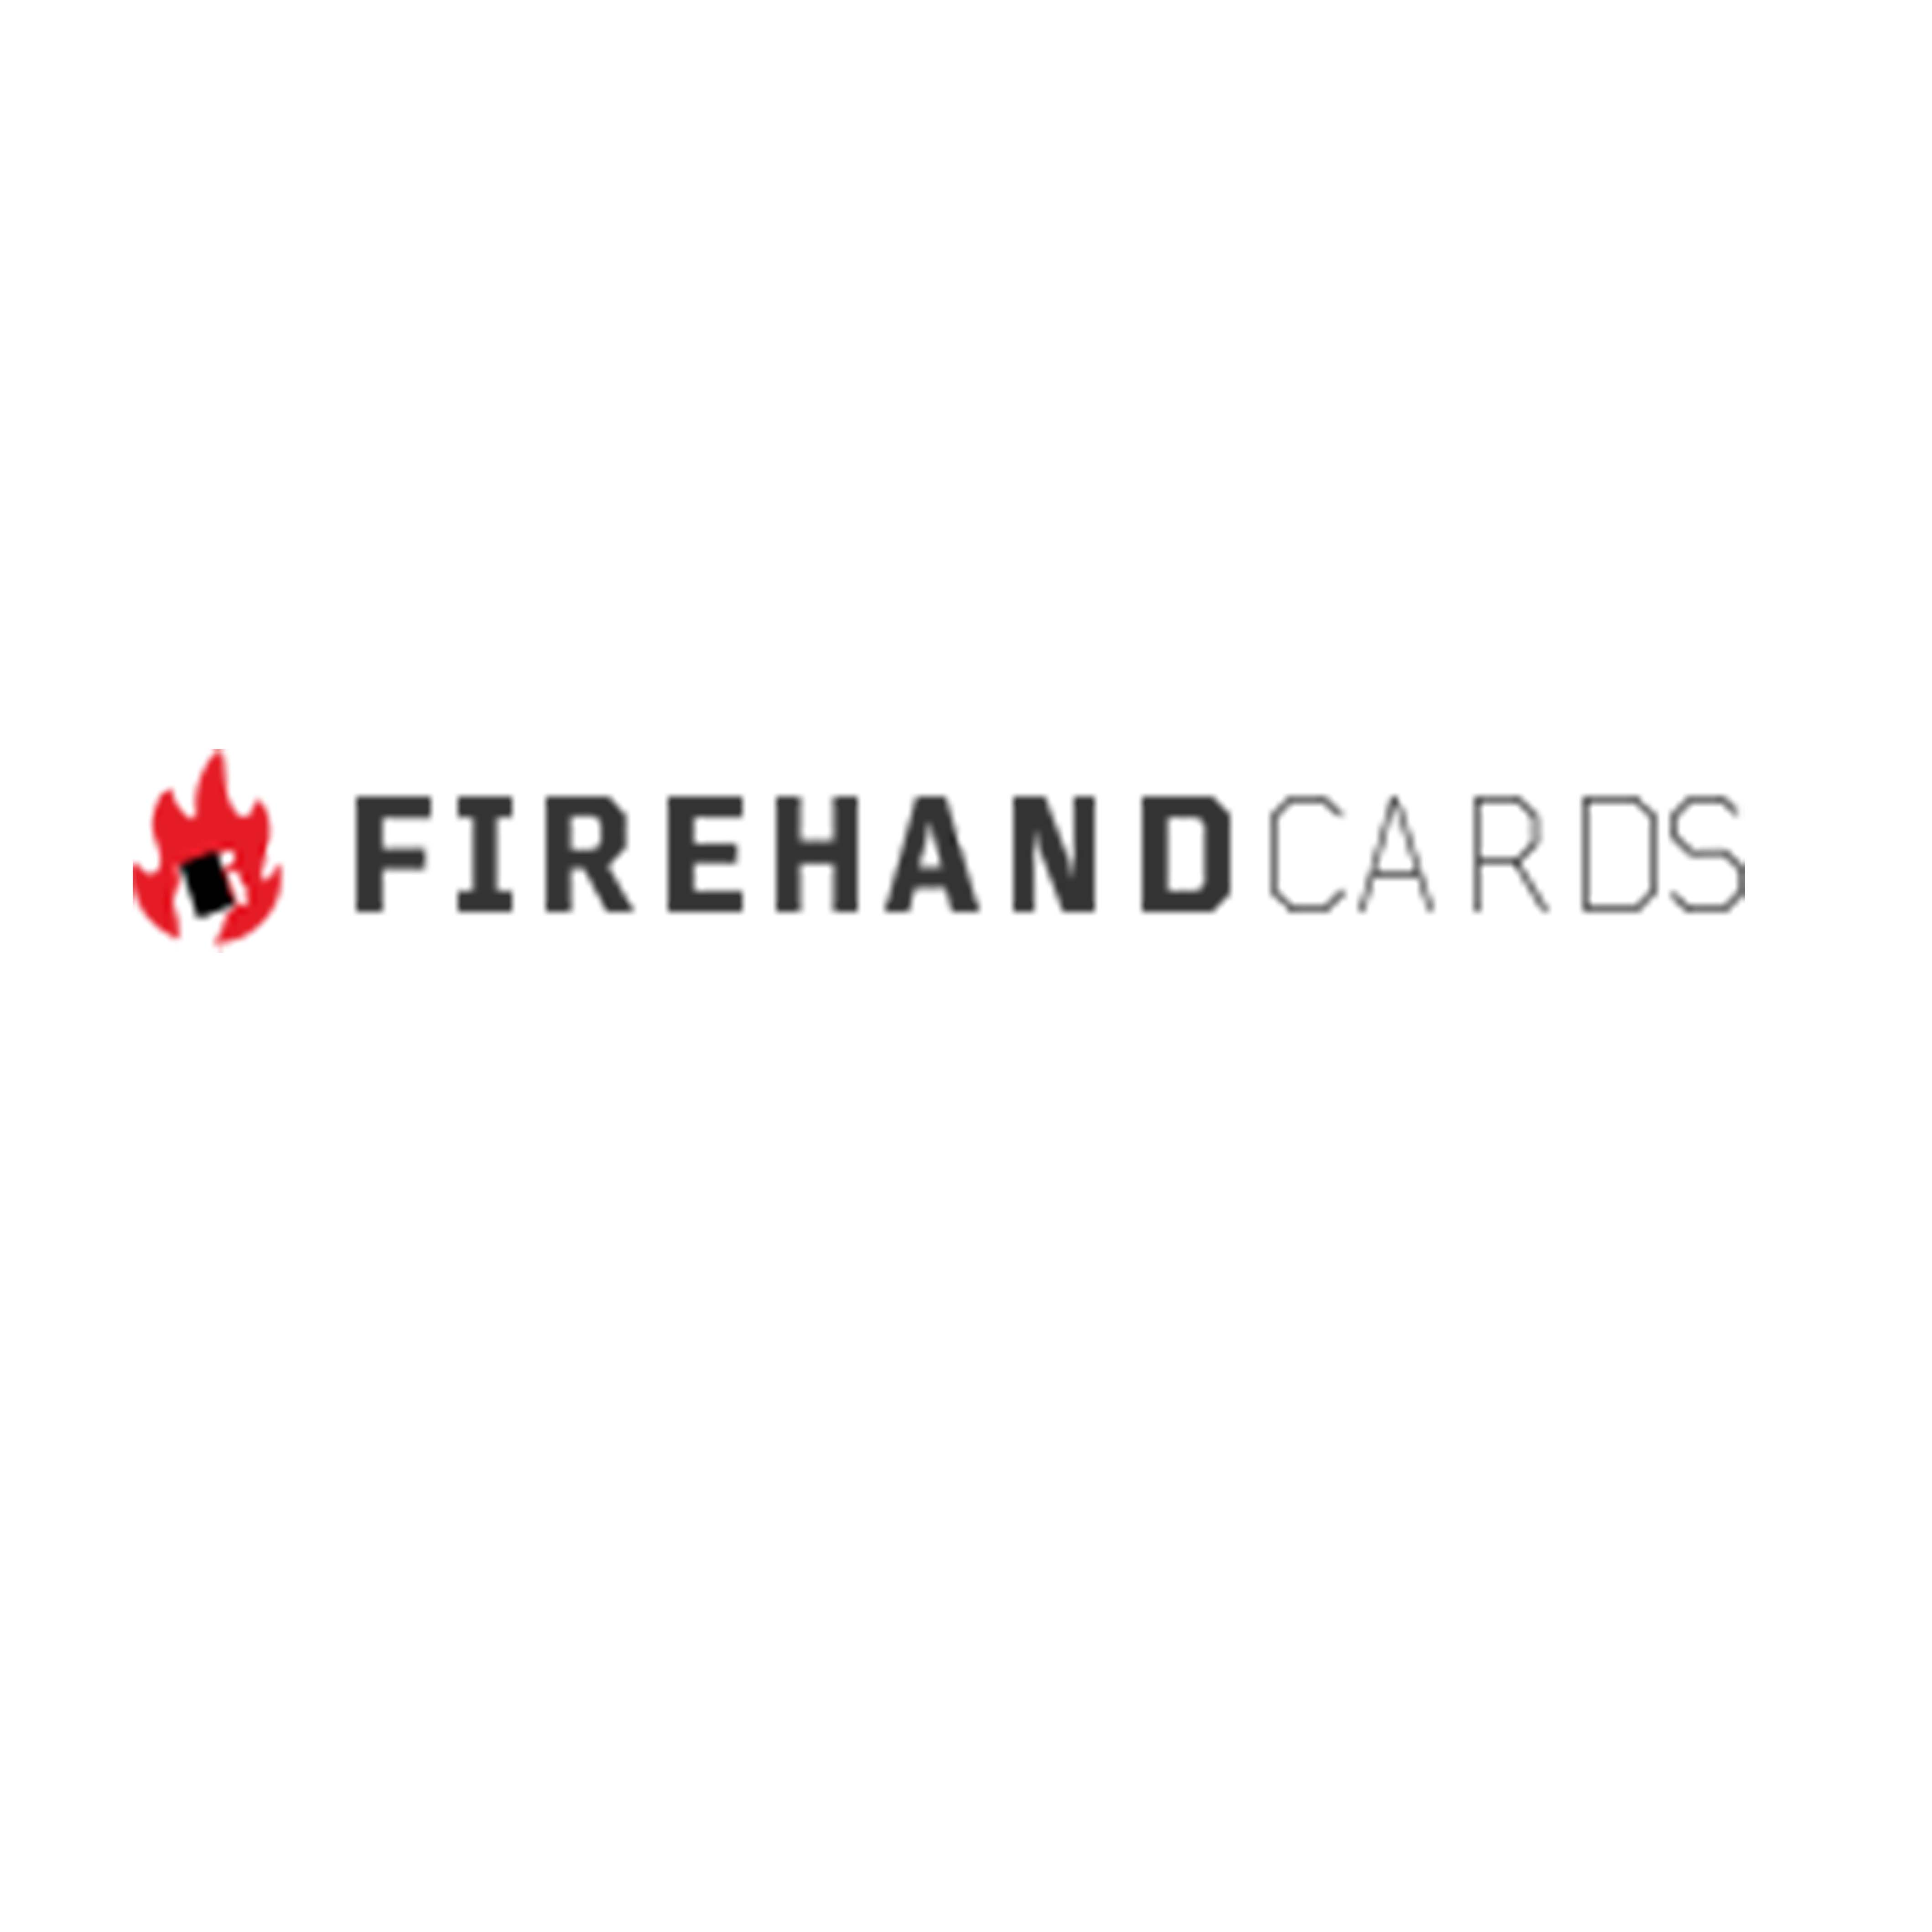 Firehandcards logo